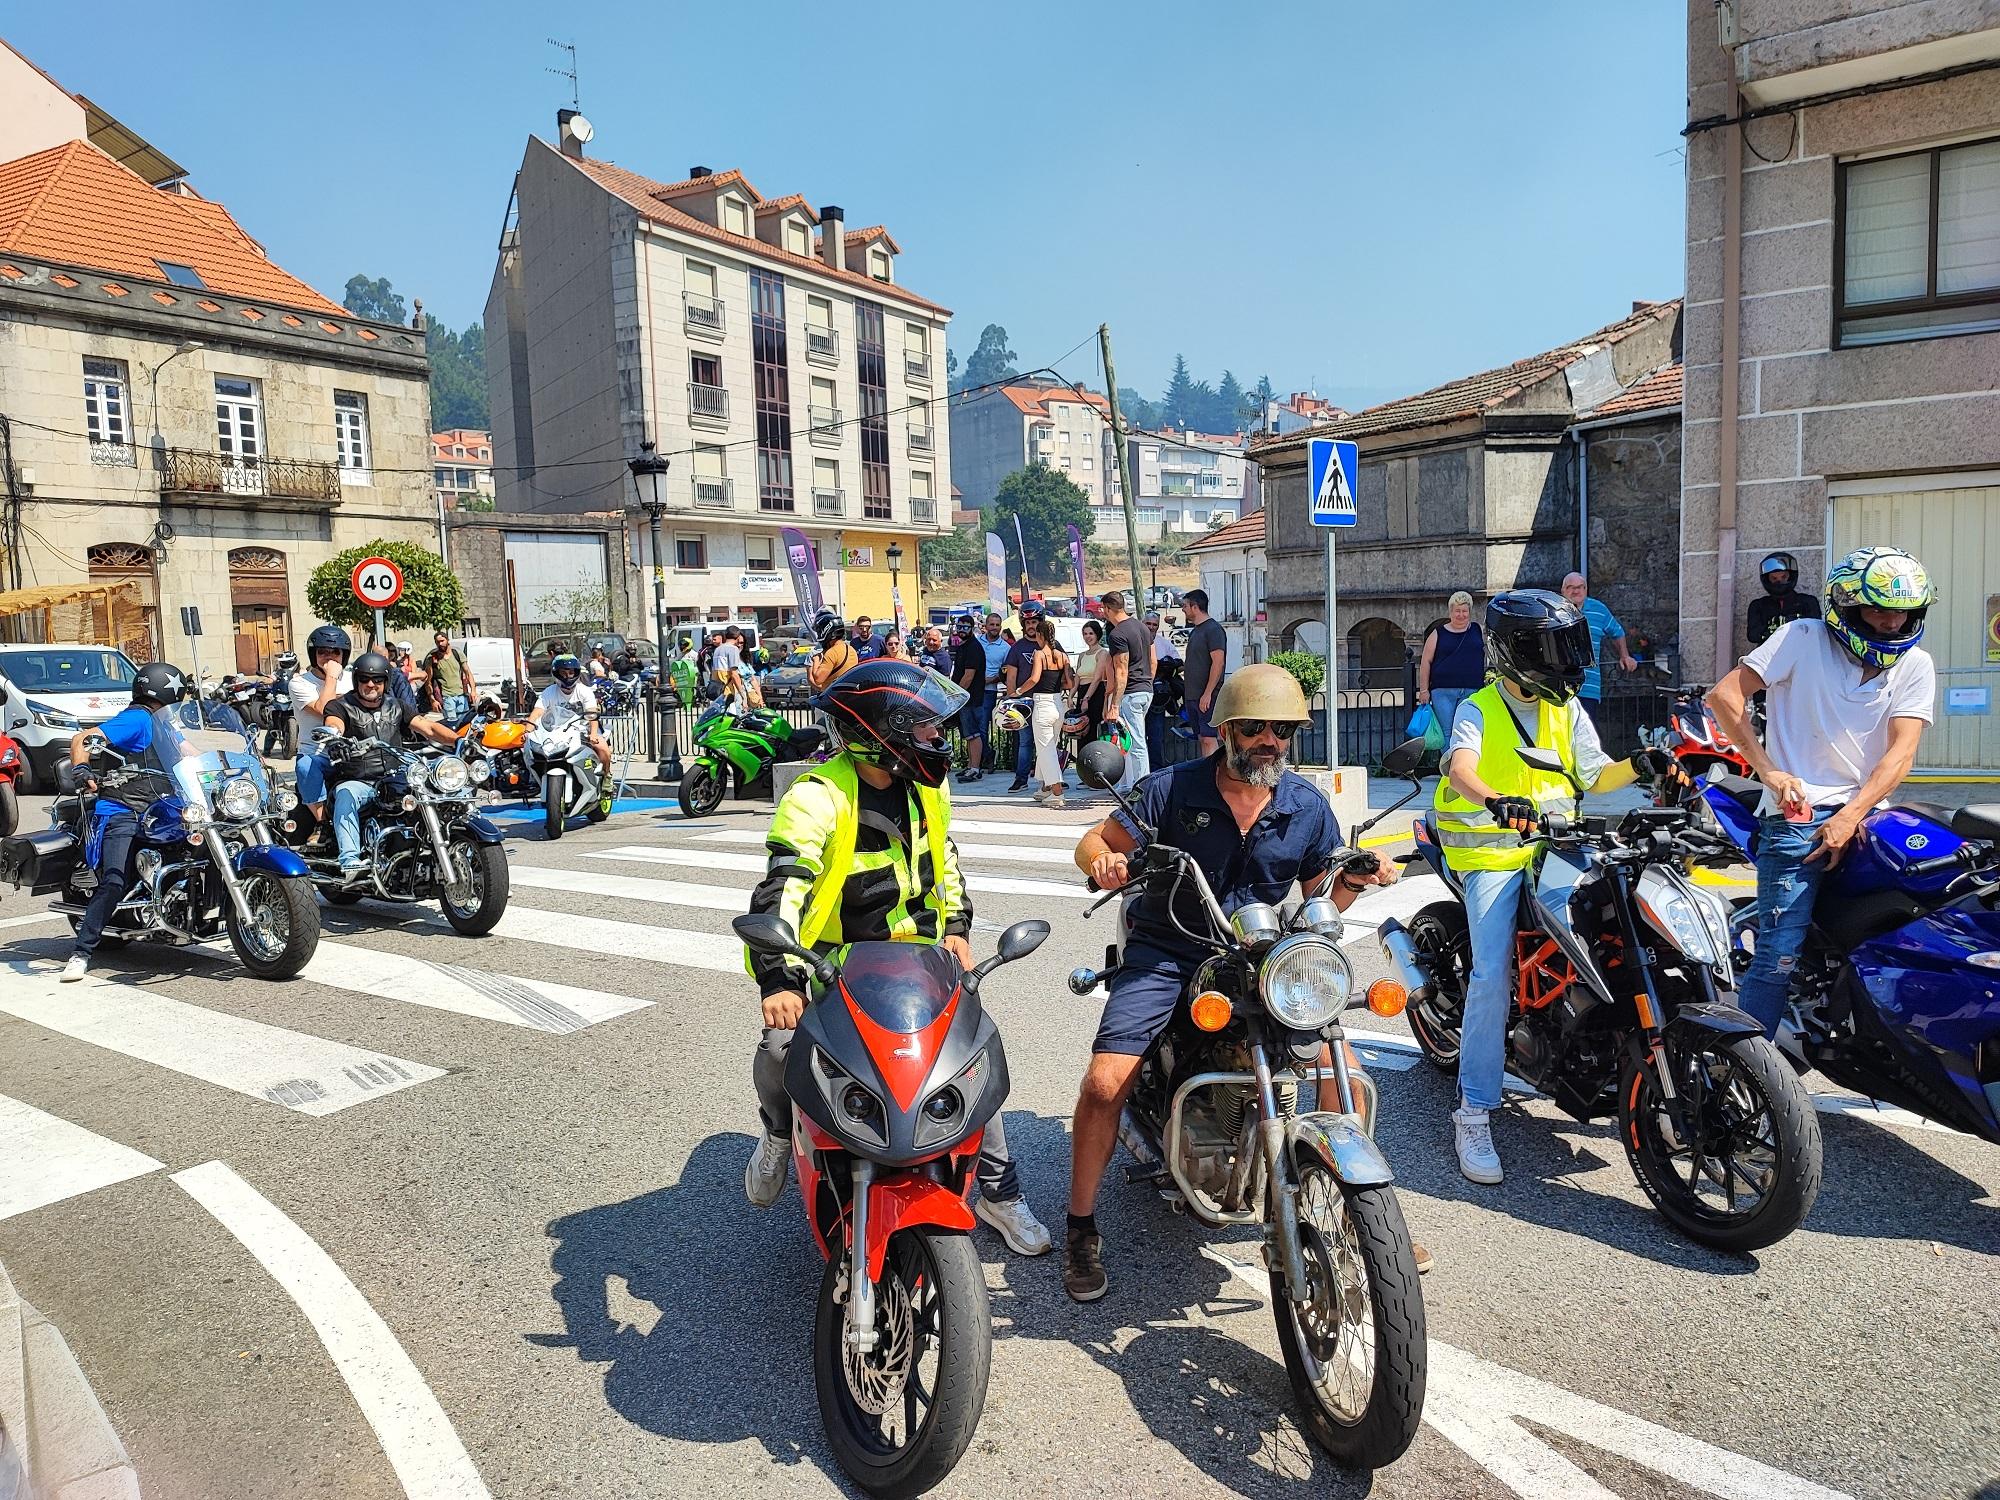 Este 31 de xullo A Cañiza acolleu a máis de 150 motos na sua "Xuntanza Moteira" organizada polo Clube Os Polemans